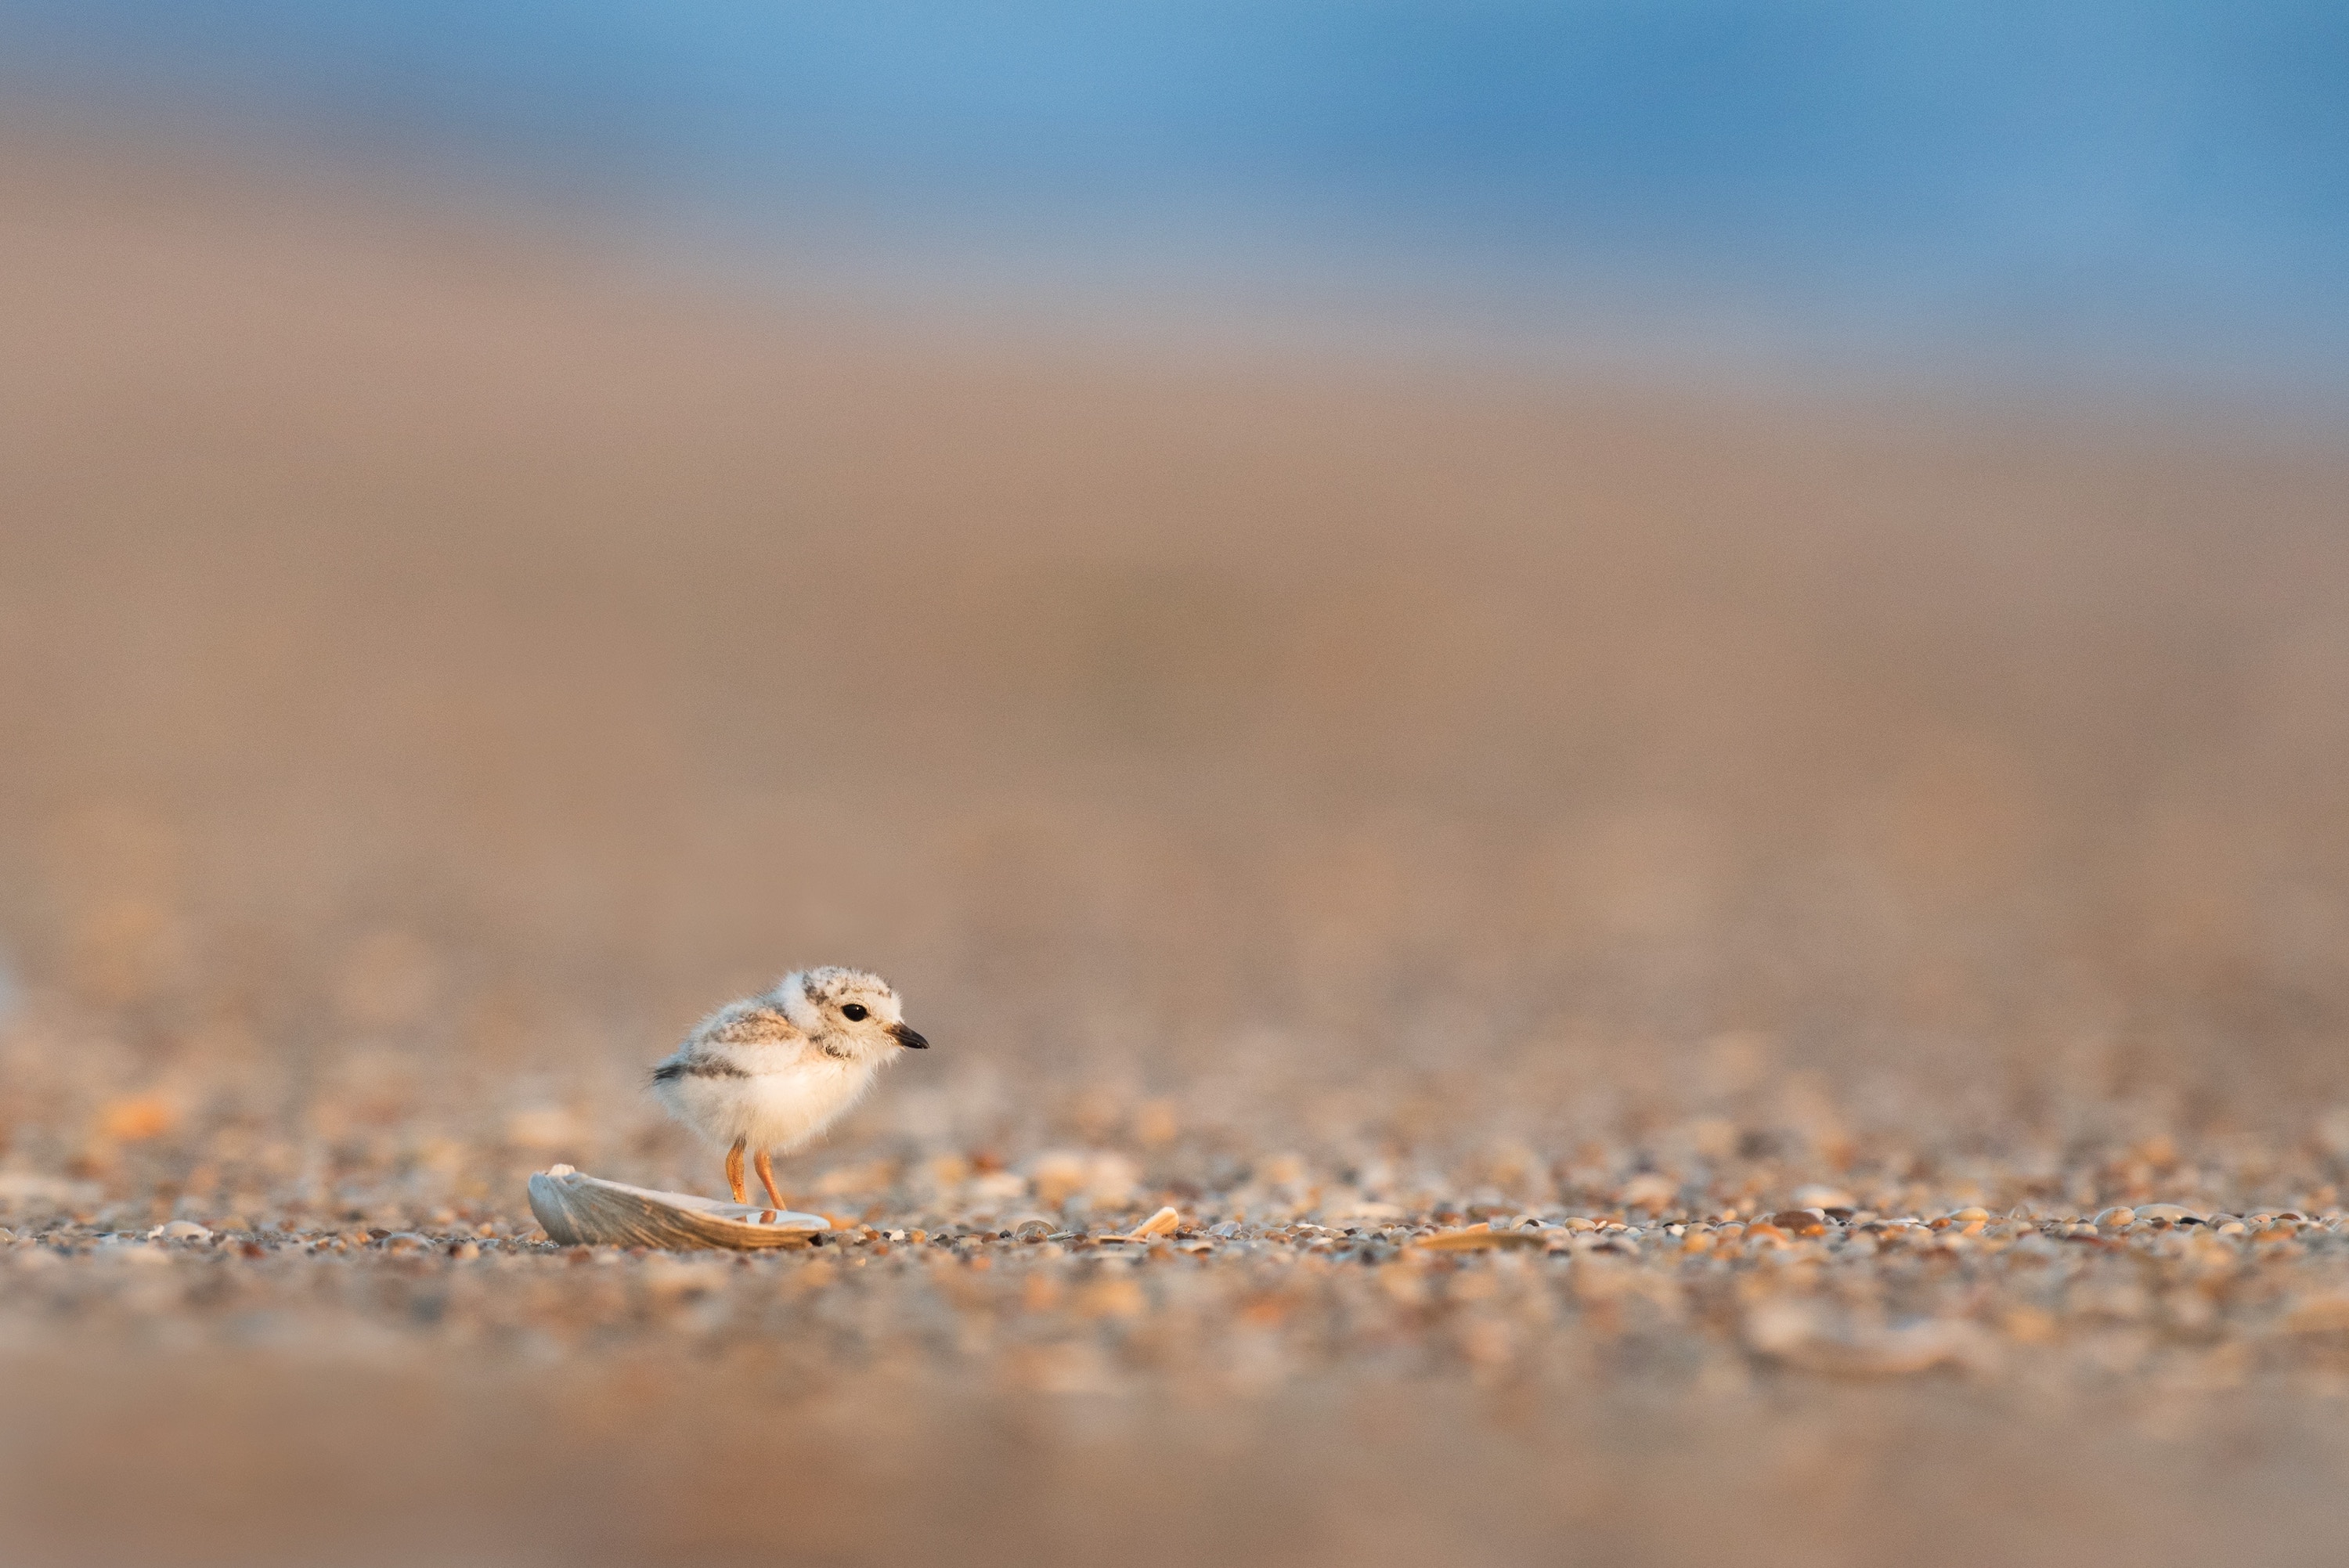 bird on beach